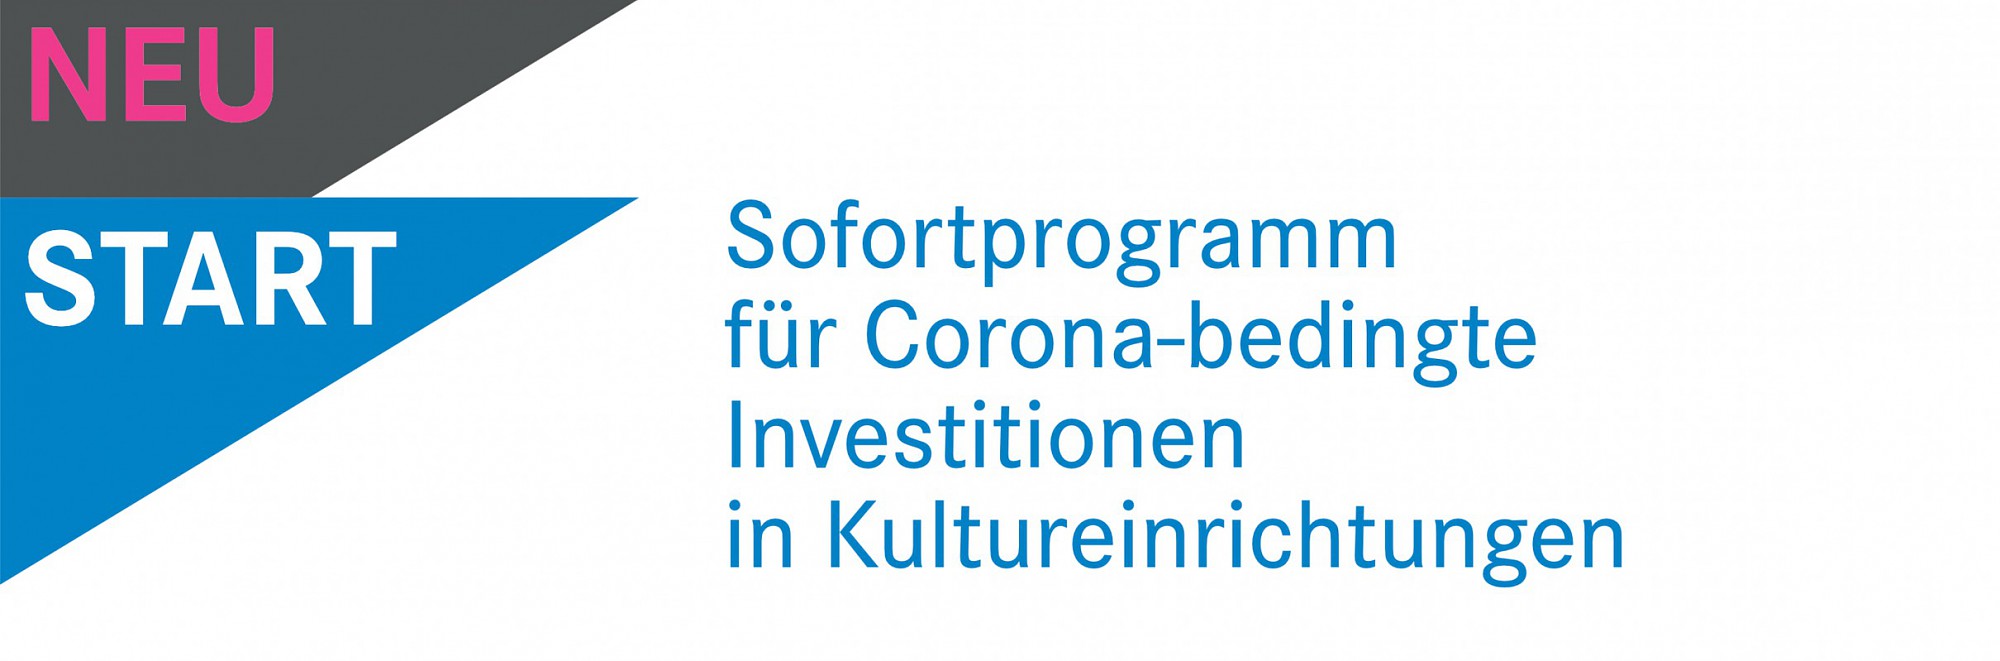 Sofortprogramm für Corona-bedingte Investitionen in Kultureinrichtungen